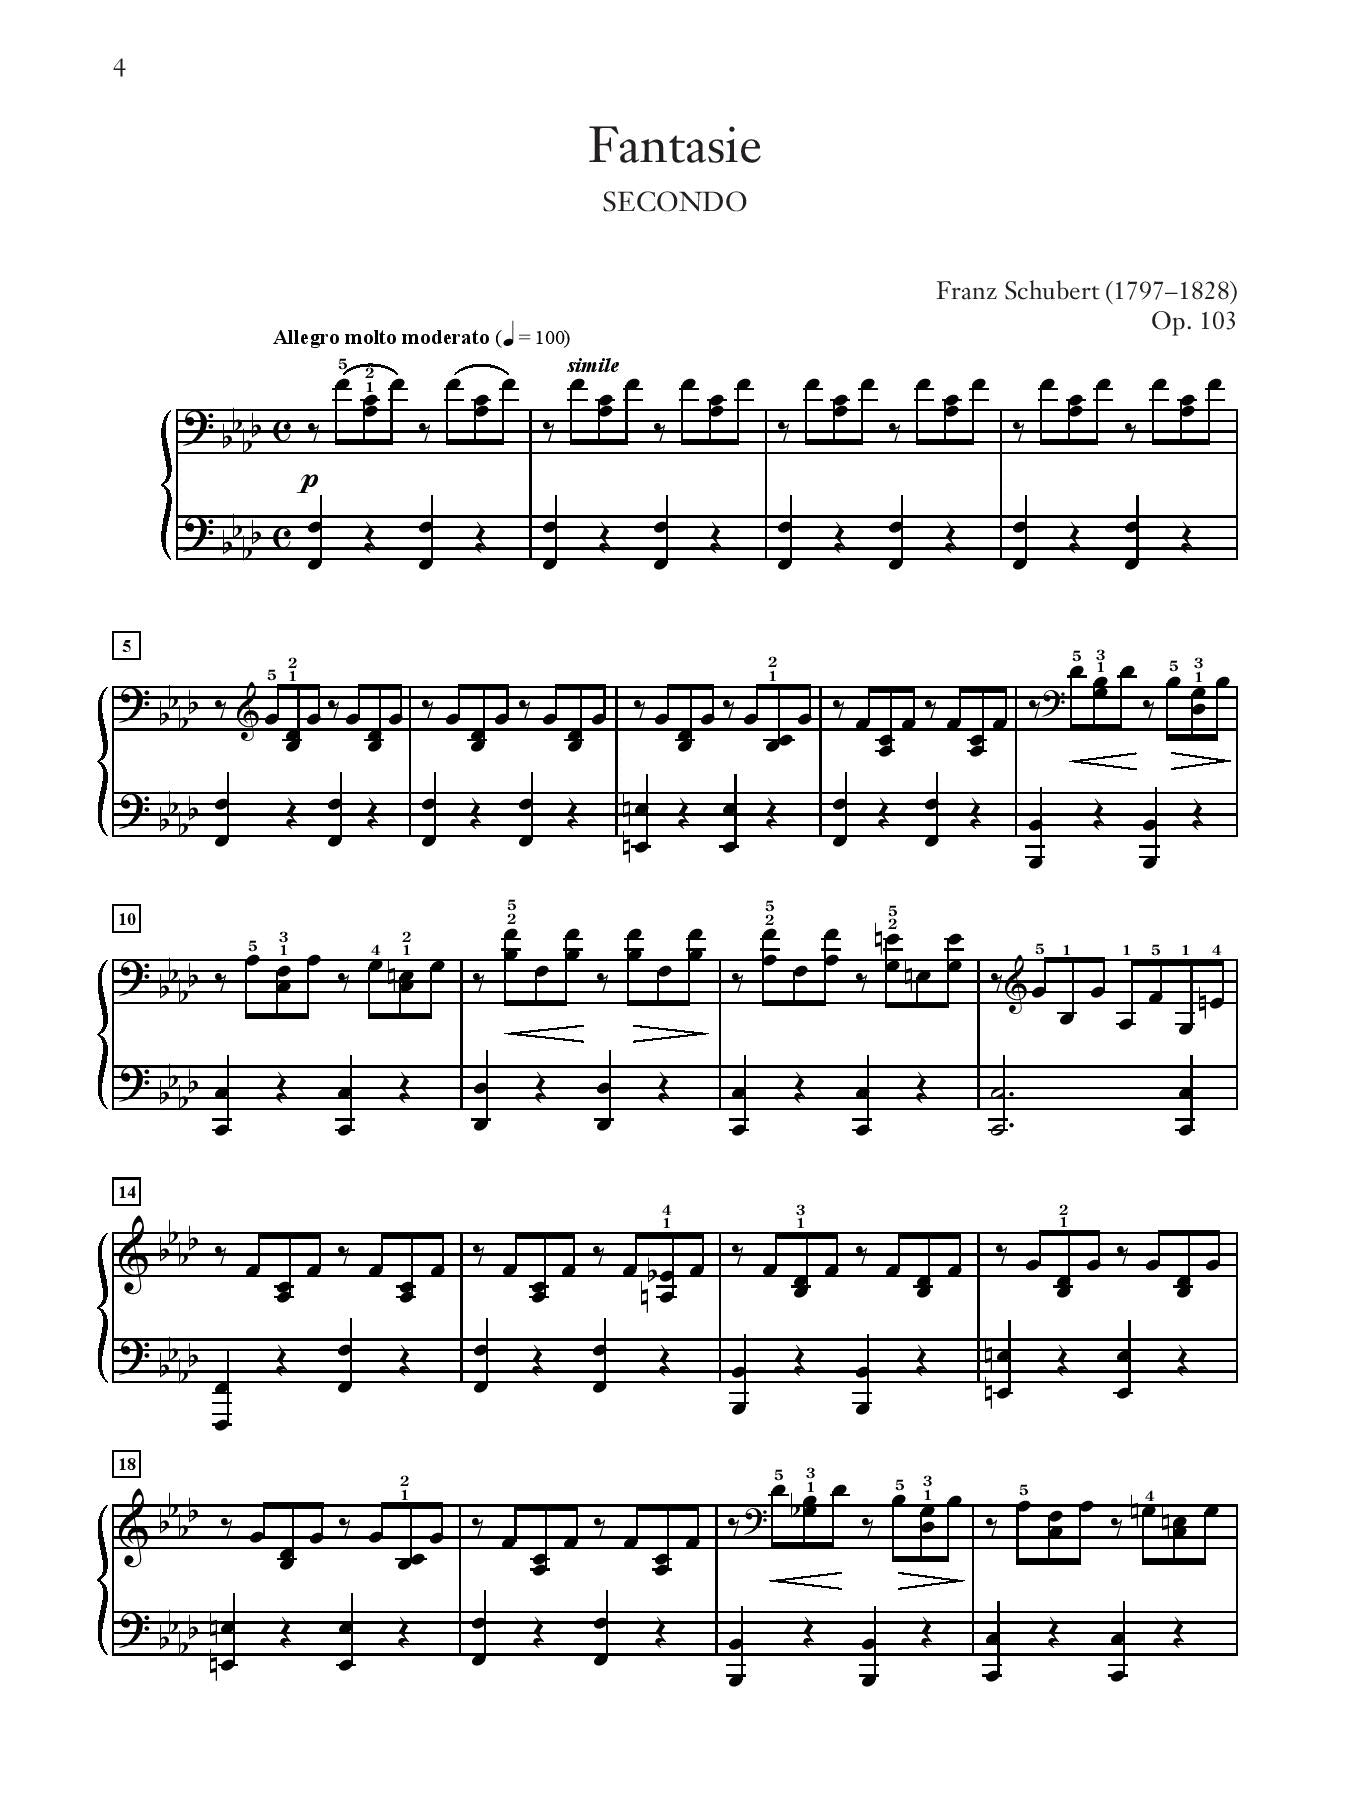 Schubert: Fantasie in F Minor, Opus 103, D. 940 for Piano Duet